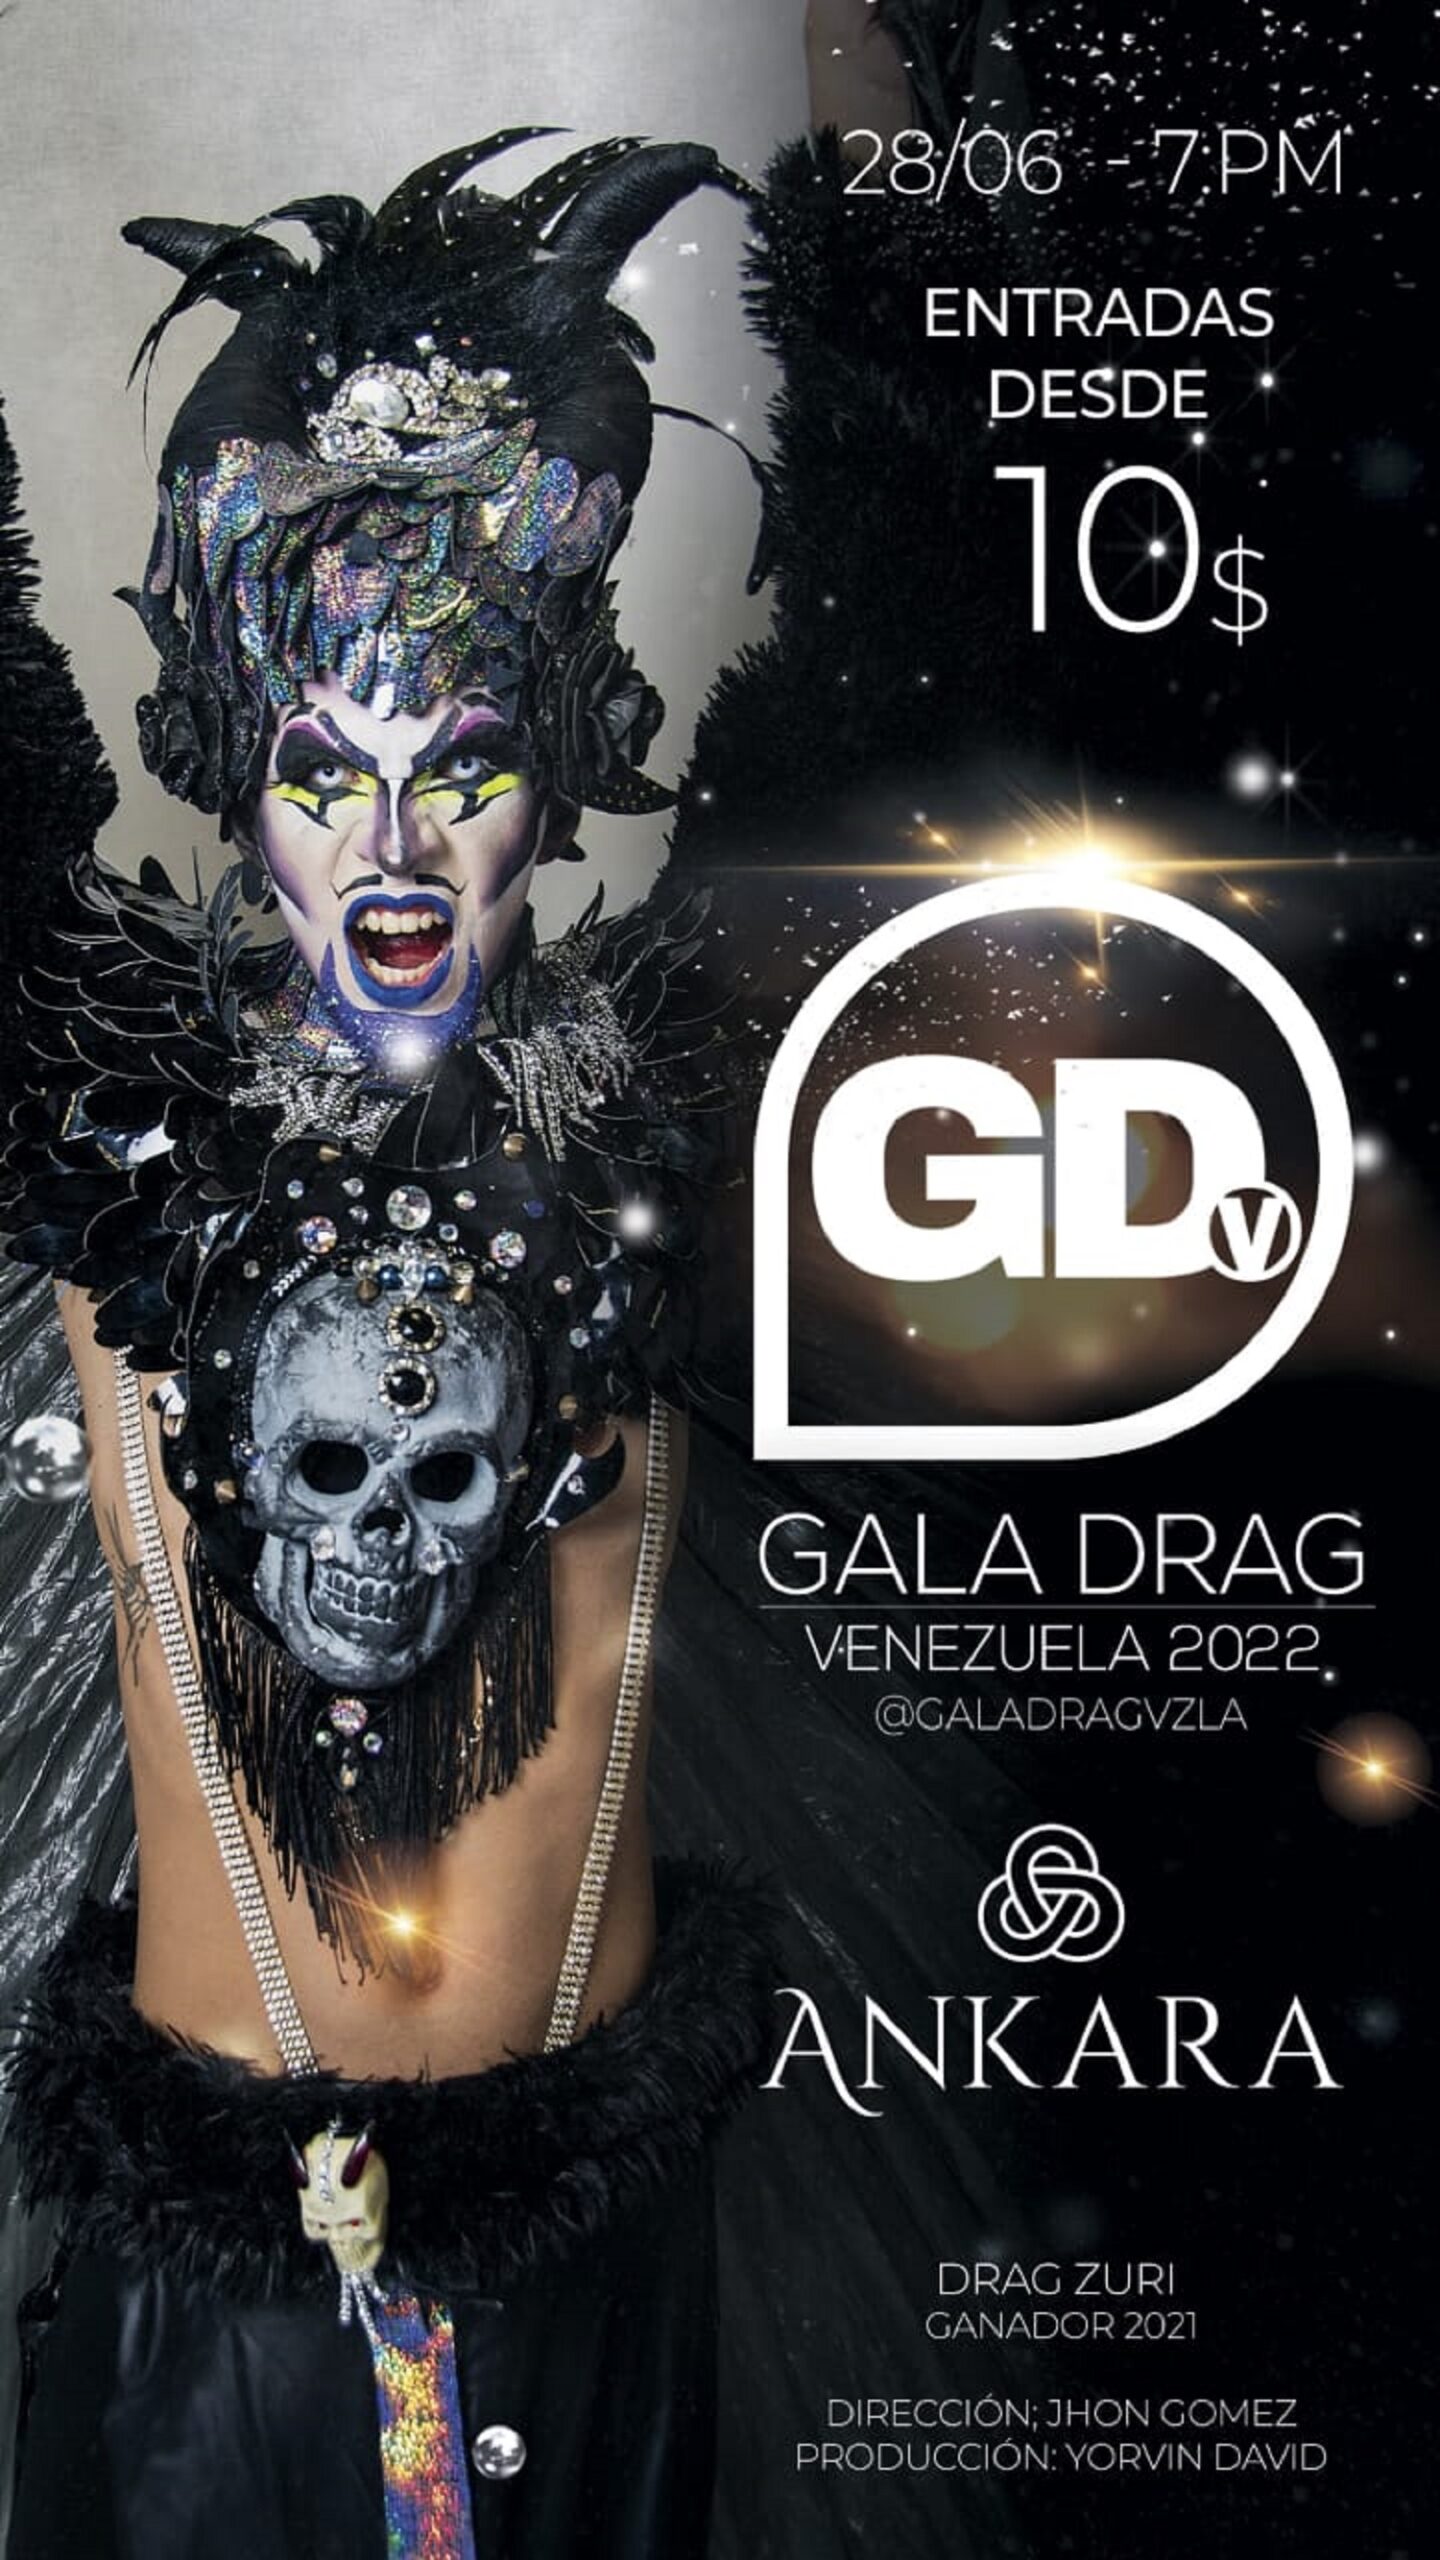 Gala Drag Queen Venezuela 2022